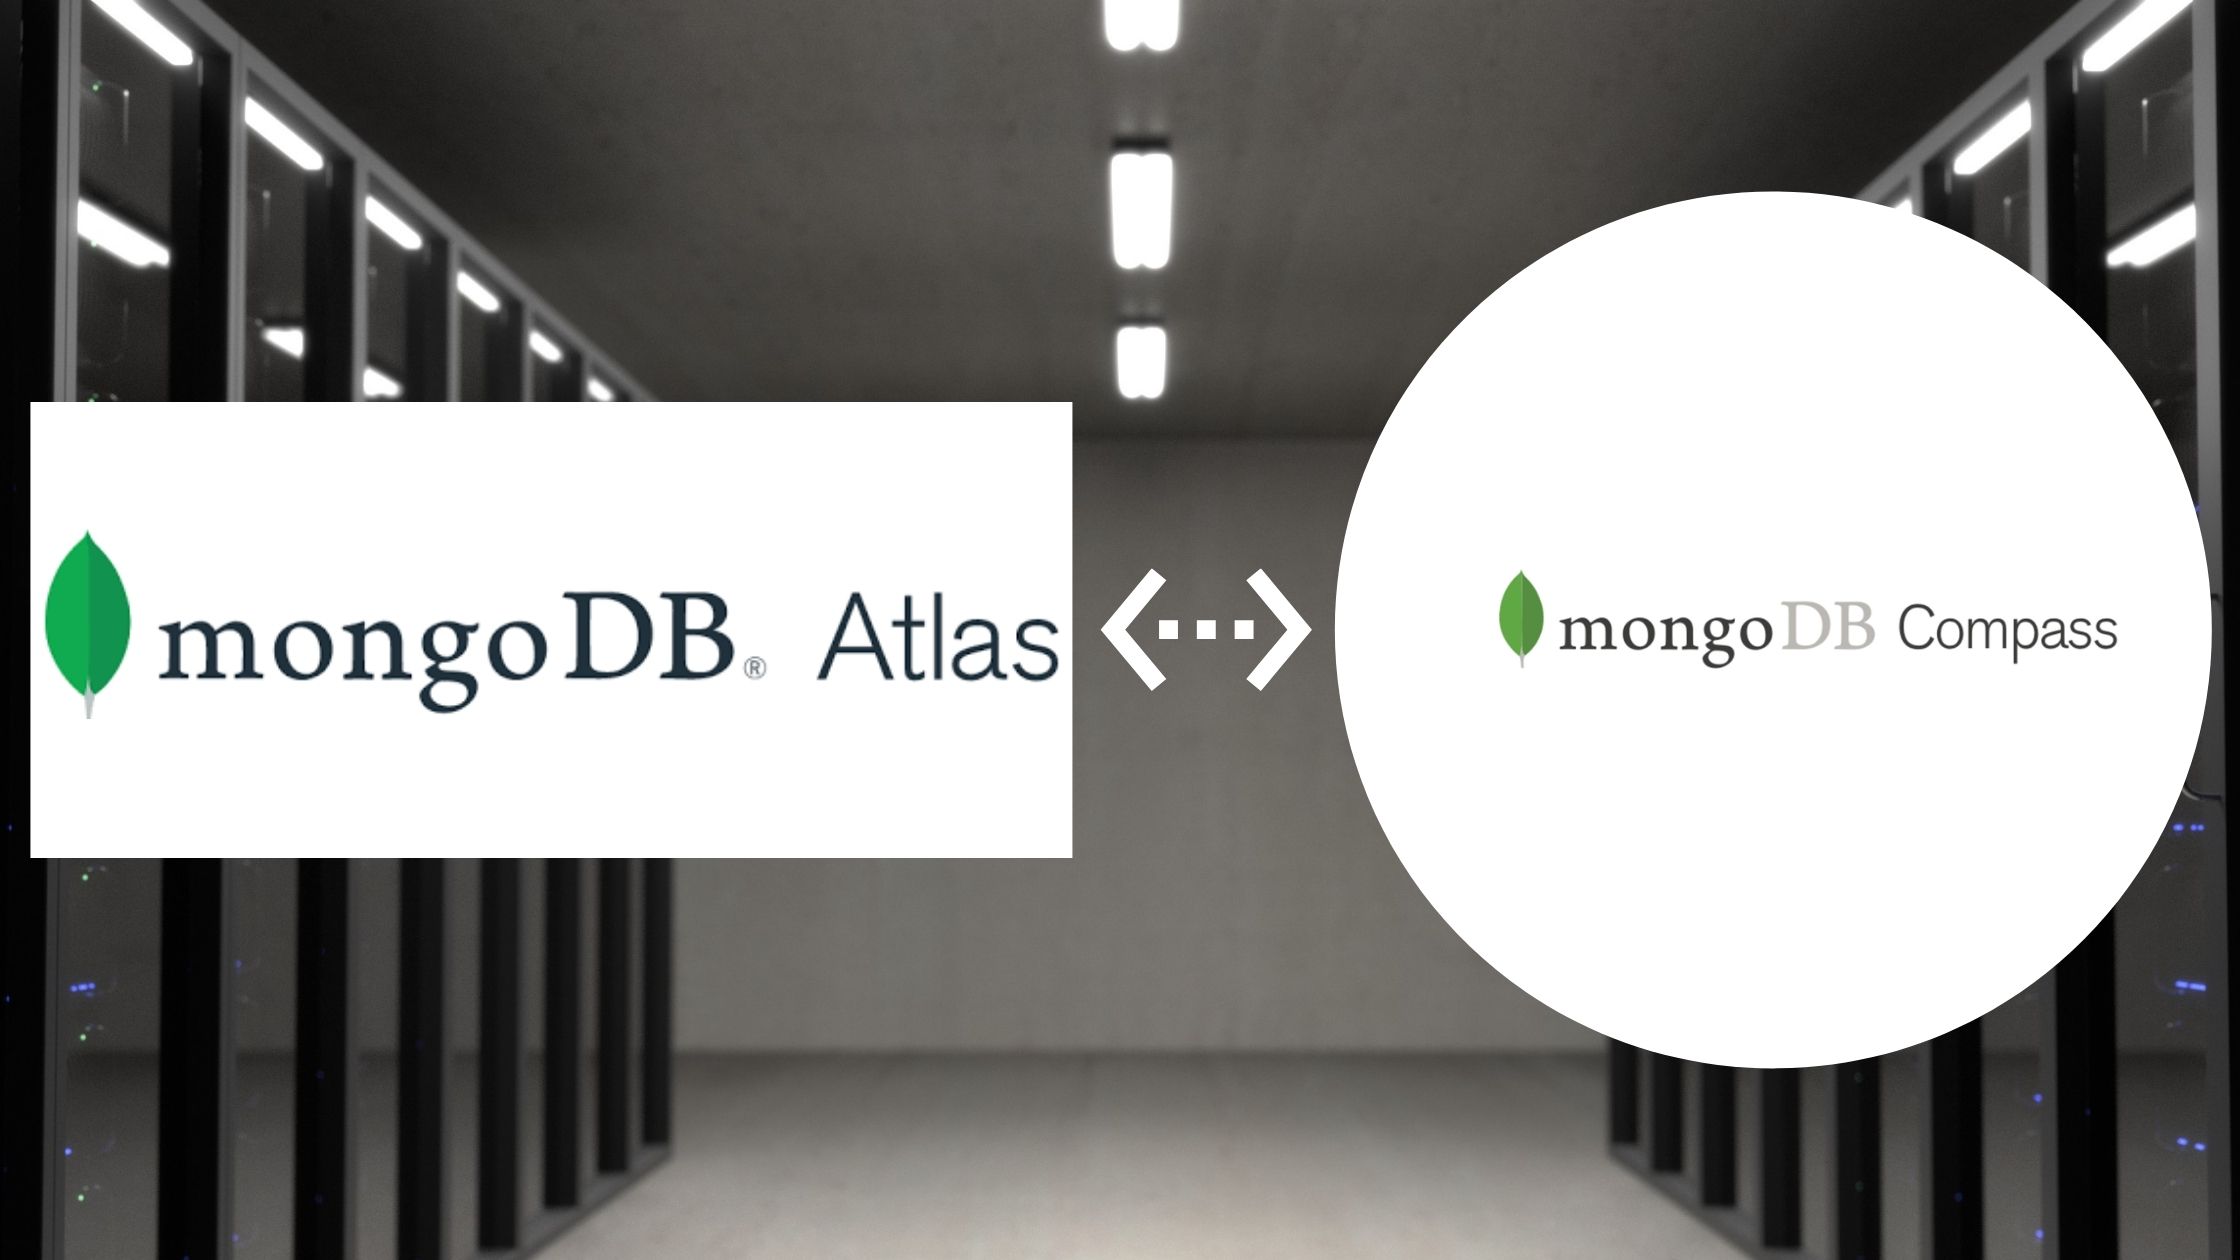 Comparison between MongoDB Atlas and MongoDB compass